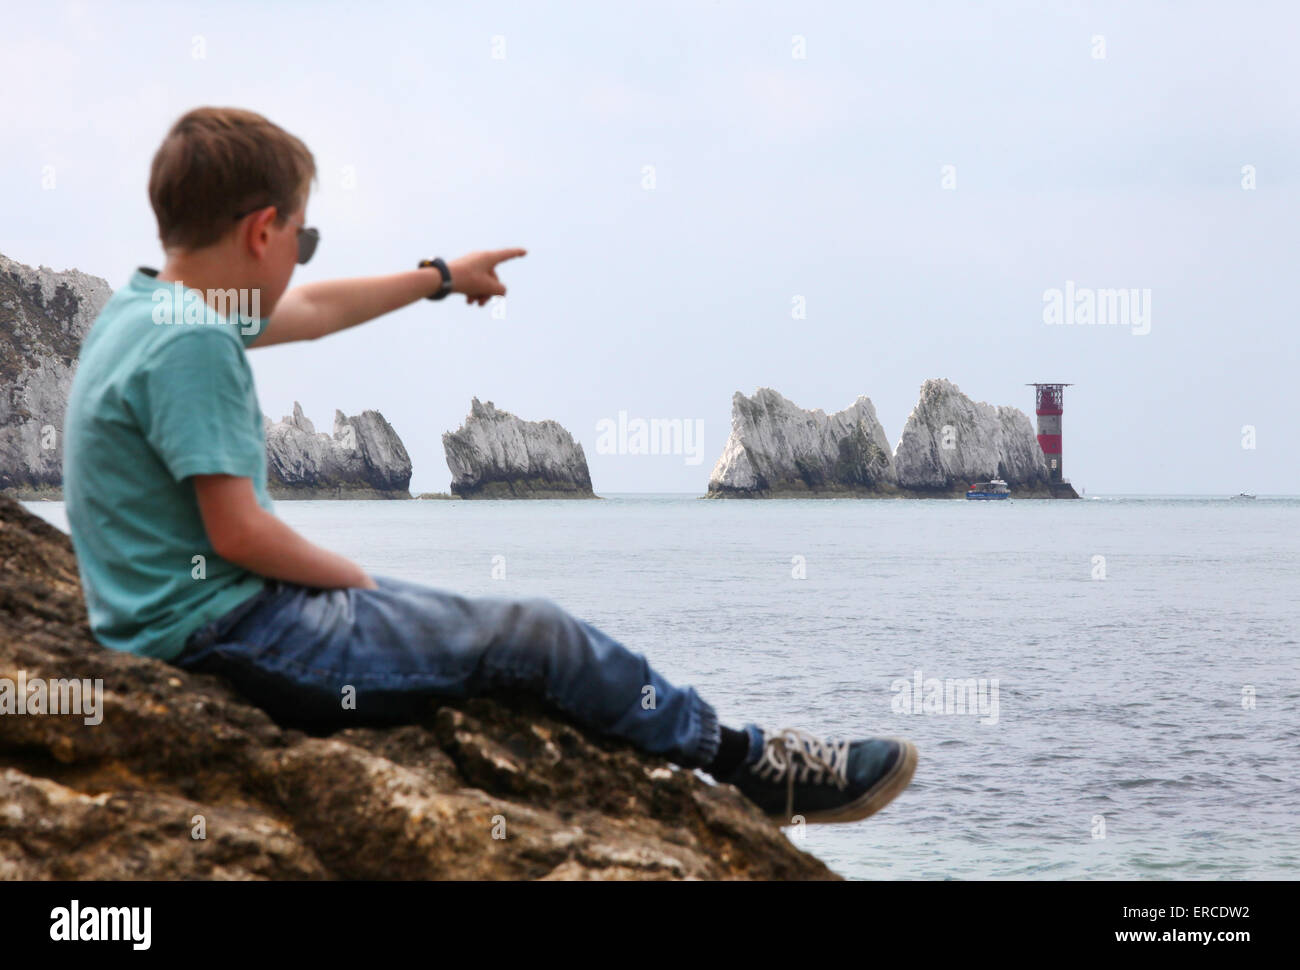 Un garçon sur un rocher en profitant de la vue sur les aiguilles sur l'île de Wight (point de se concentrer sur les aiguilles) Banque D'Images